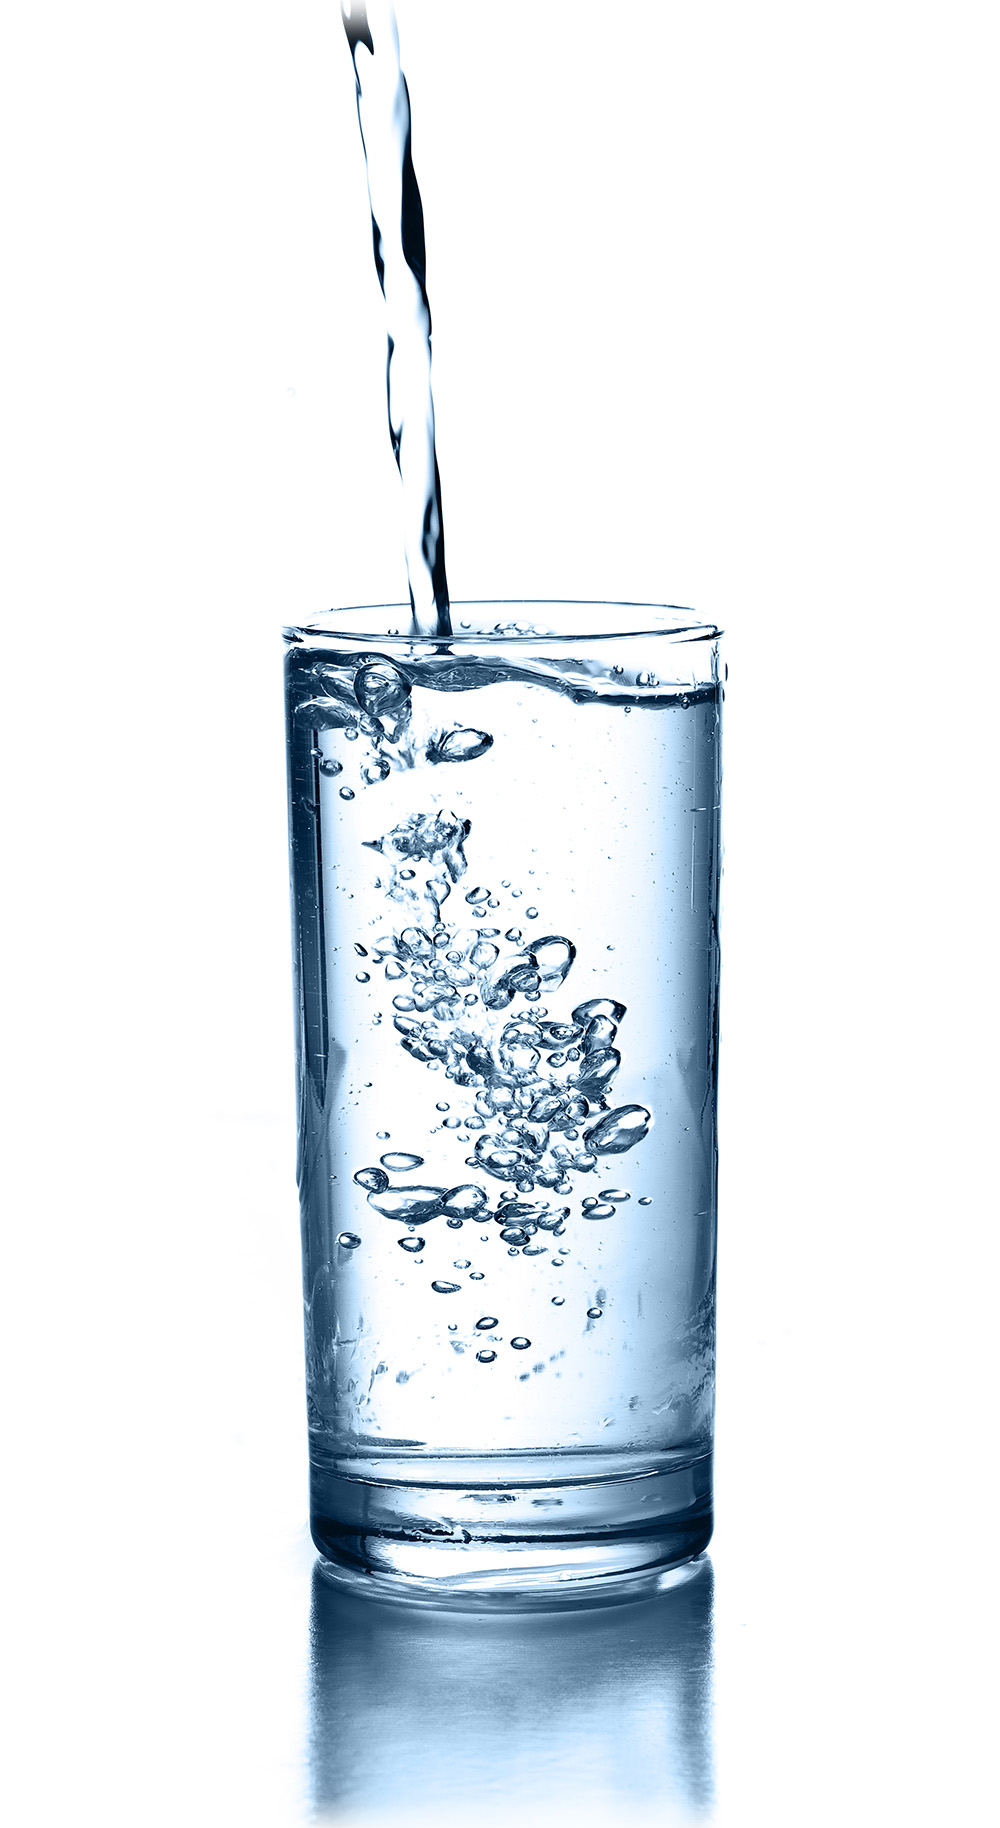 نوشیدن روزانه ۸ لیوان آب، باوری درست است؟